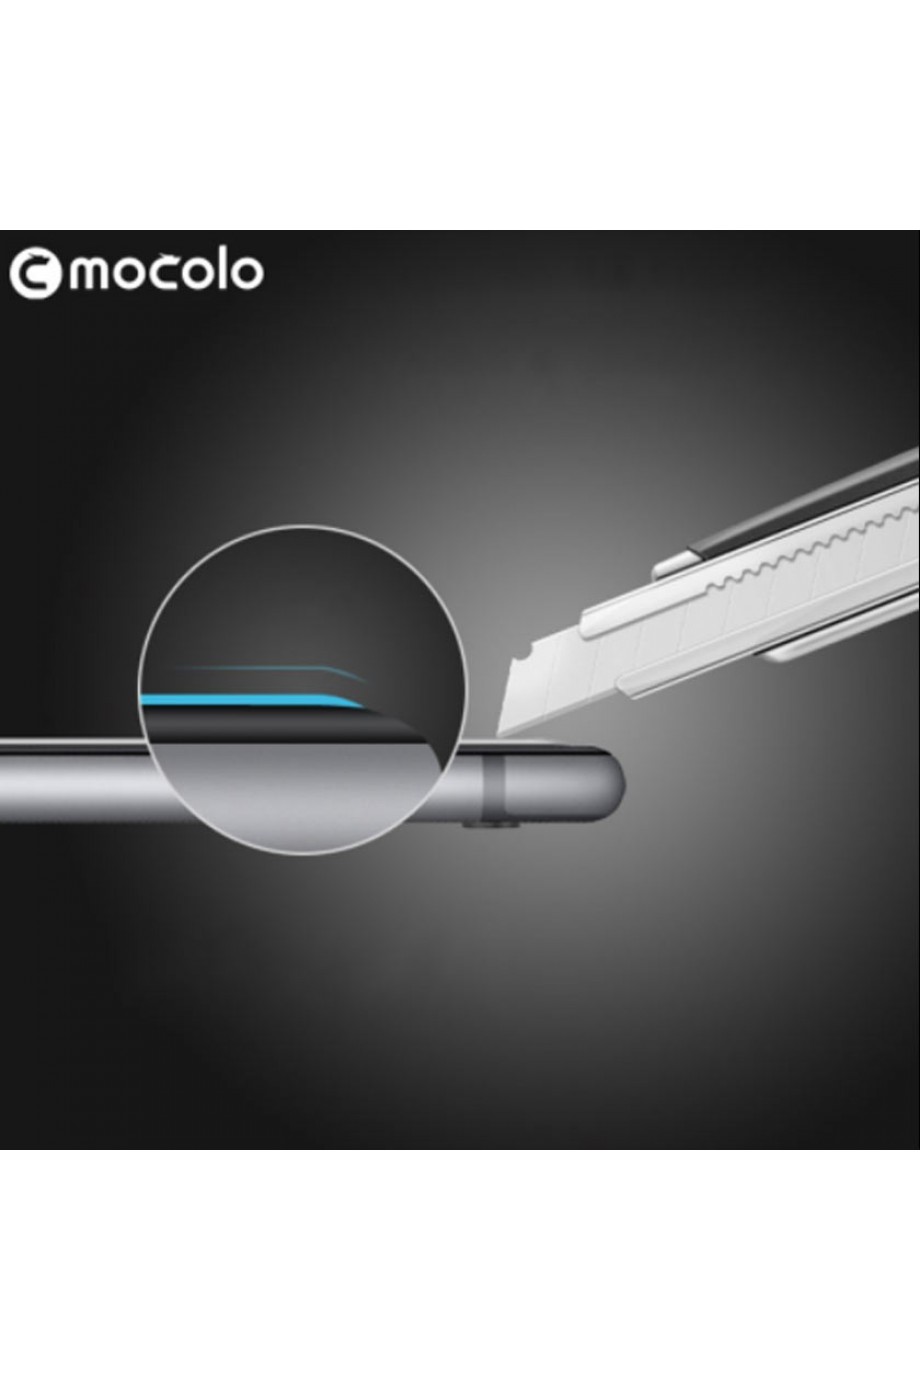 Защитное стекло Mocolo для iPhone 7